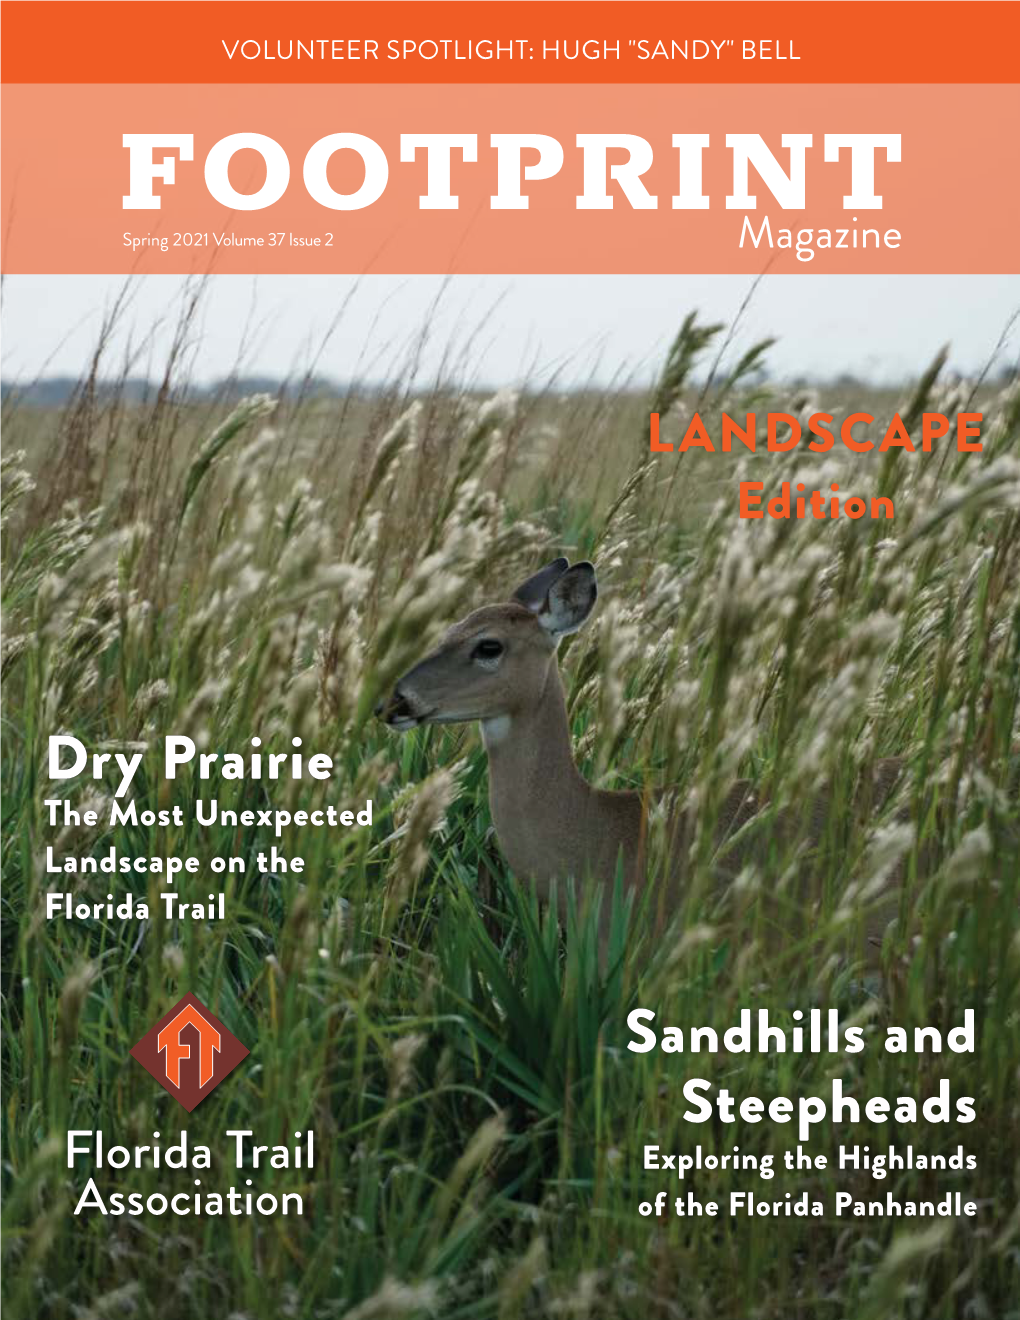 FOOTPRINT Spring 2021 Volume 37 Issue 2 Magazine